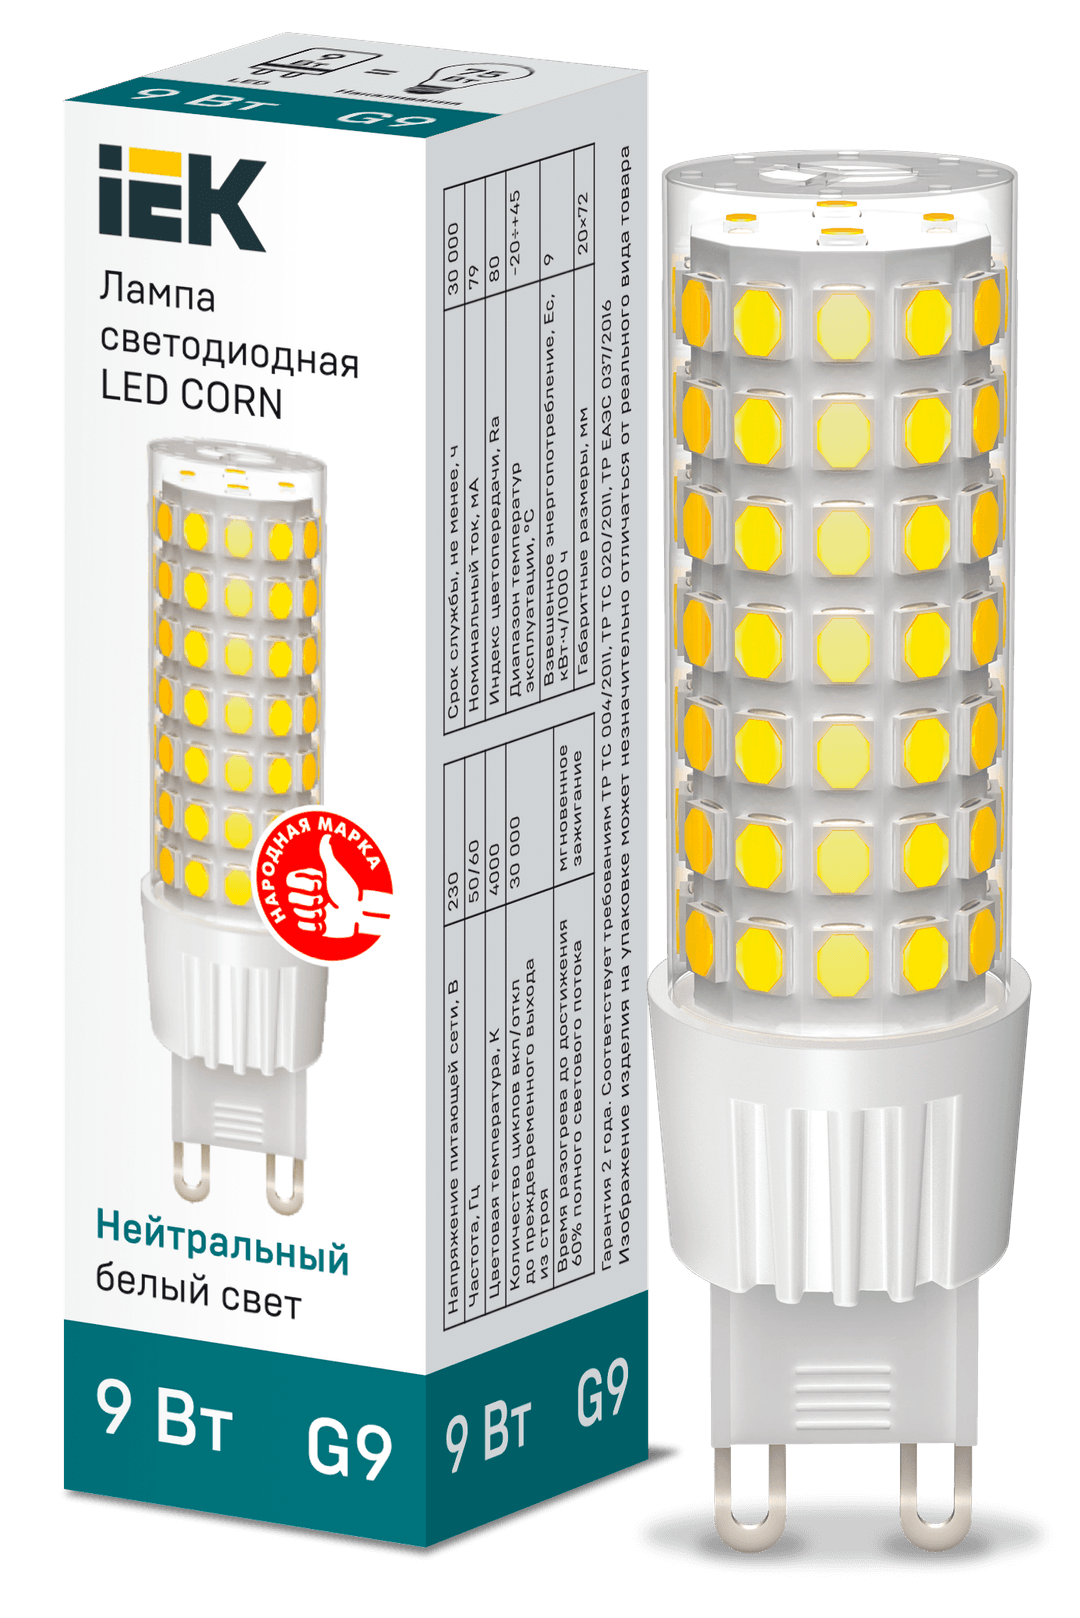 Лампа светодиодная G9, corn, 220 В, 9 Вт, 855лм, 4000K/нейтральный, 70-79Ra, Iek (LLE-CORN-9-230-40-G9)